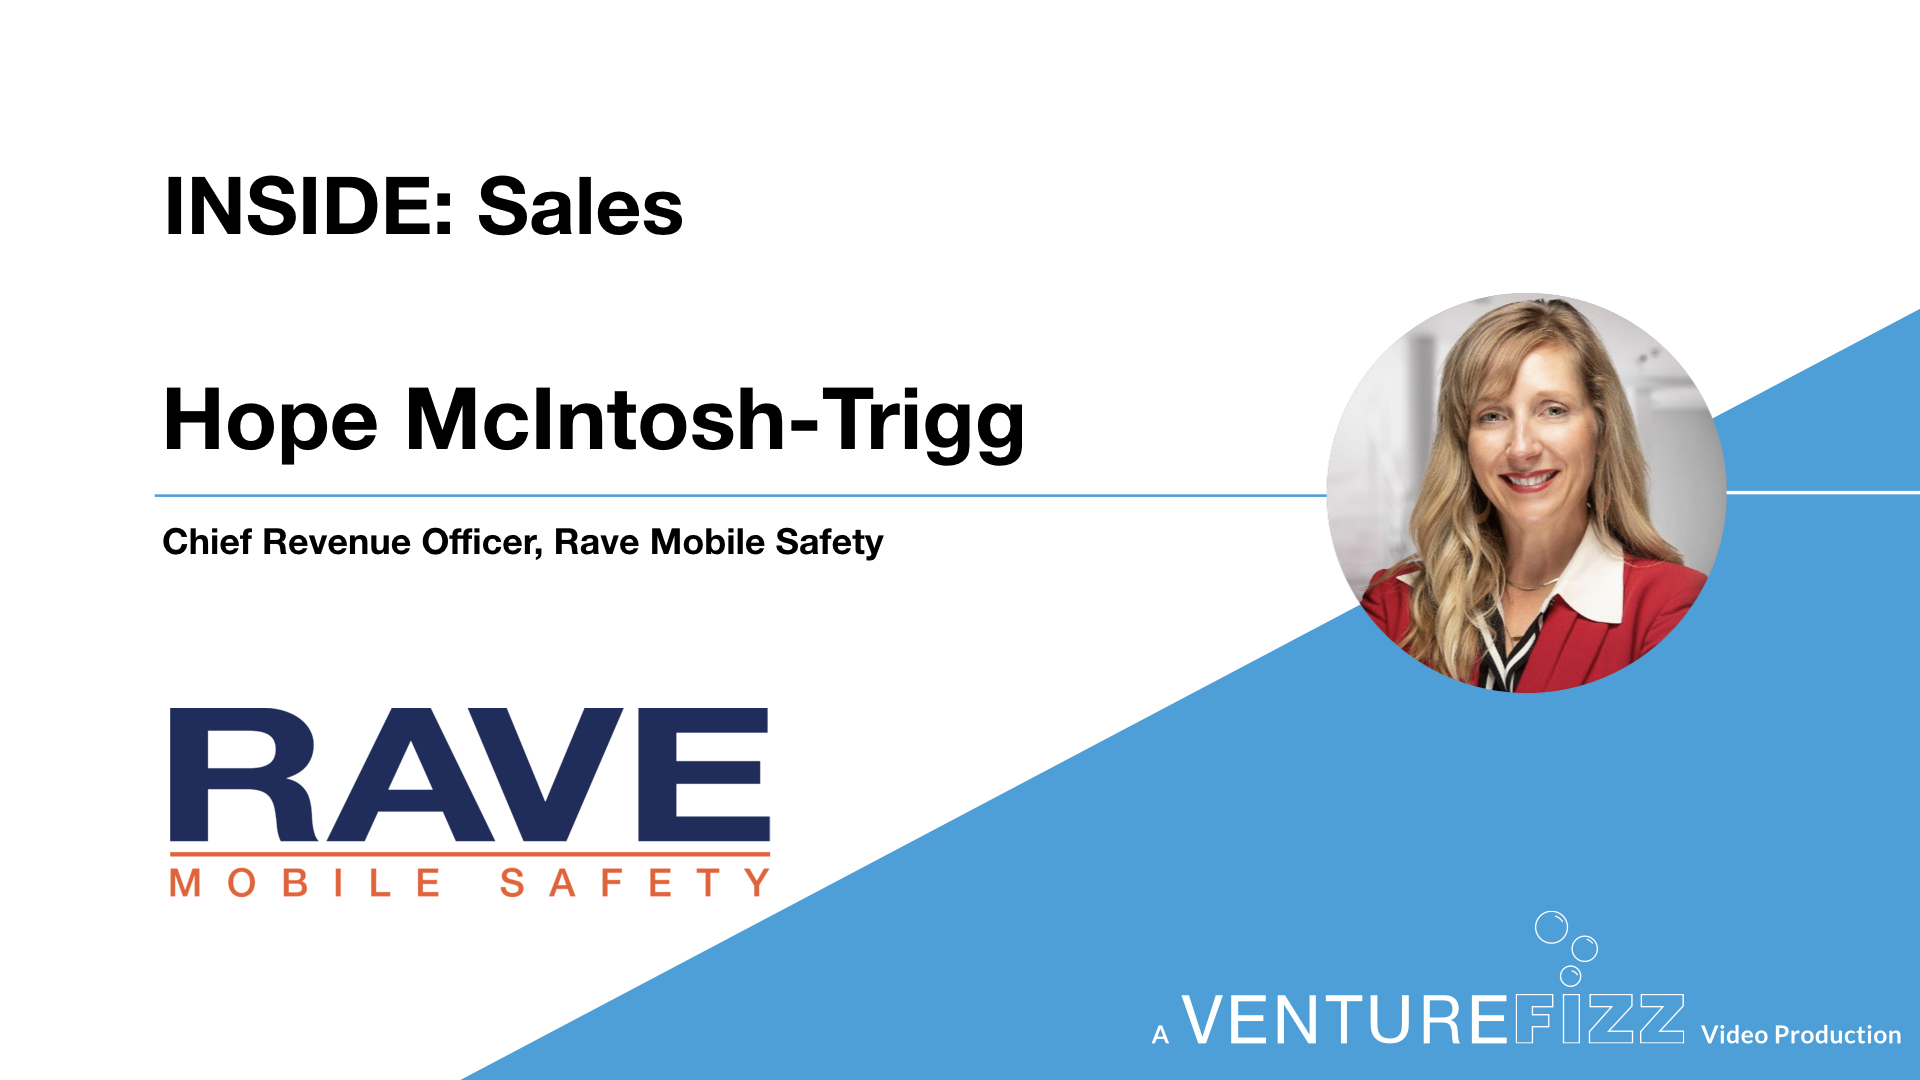 Inside: Sales at Rave Mobile Safety banner image